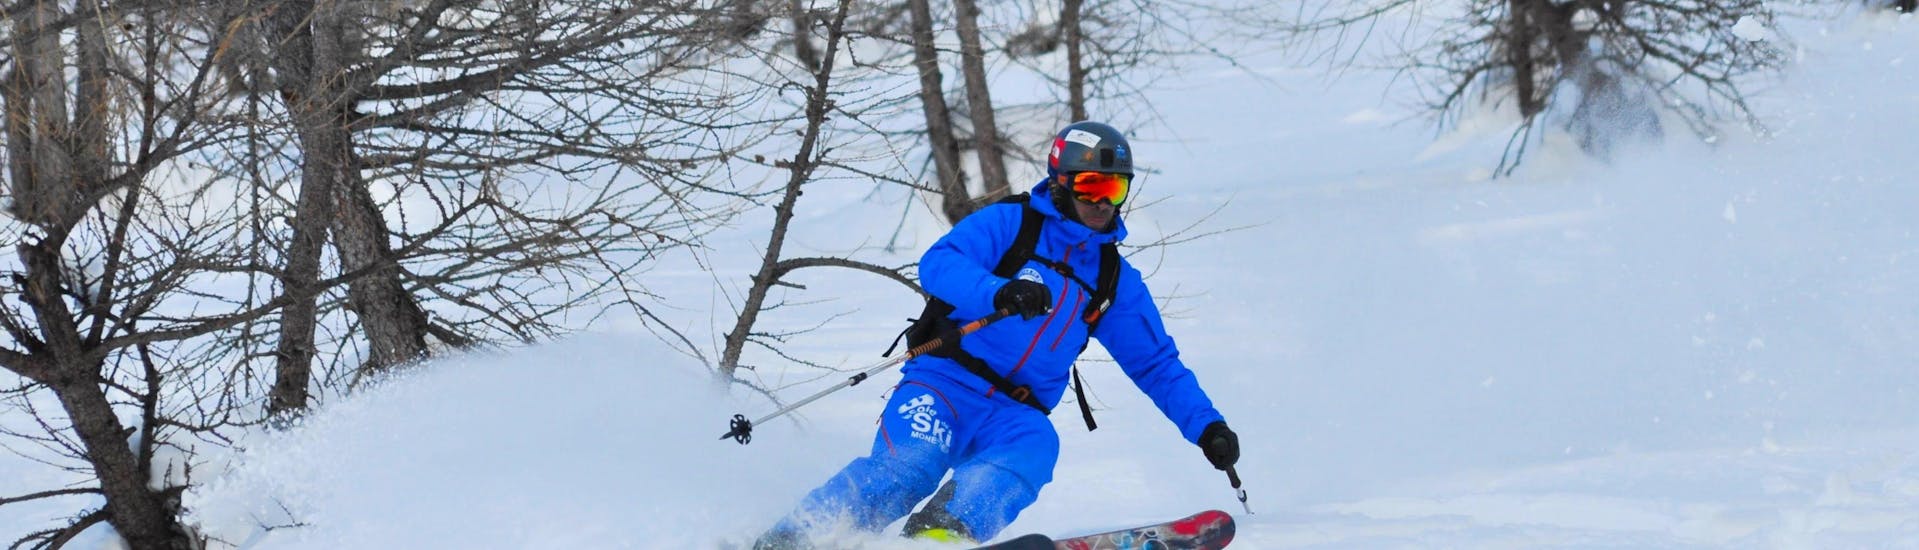 Lezioni di sci freeride (15-25 anni) per sciatori esperti.